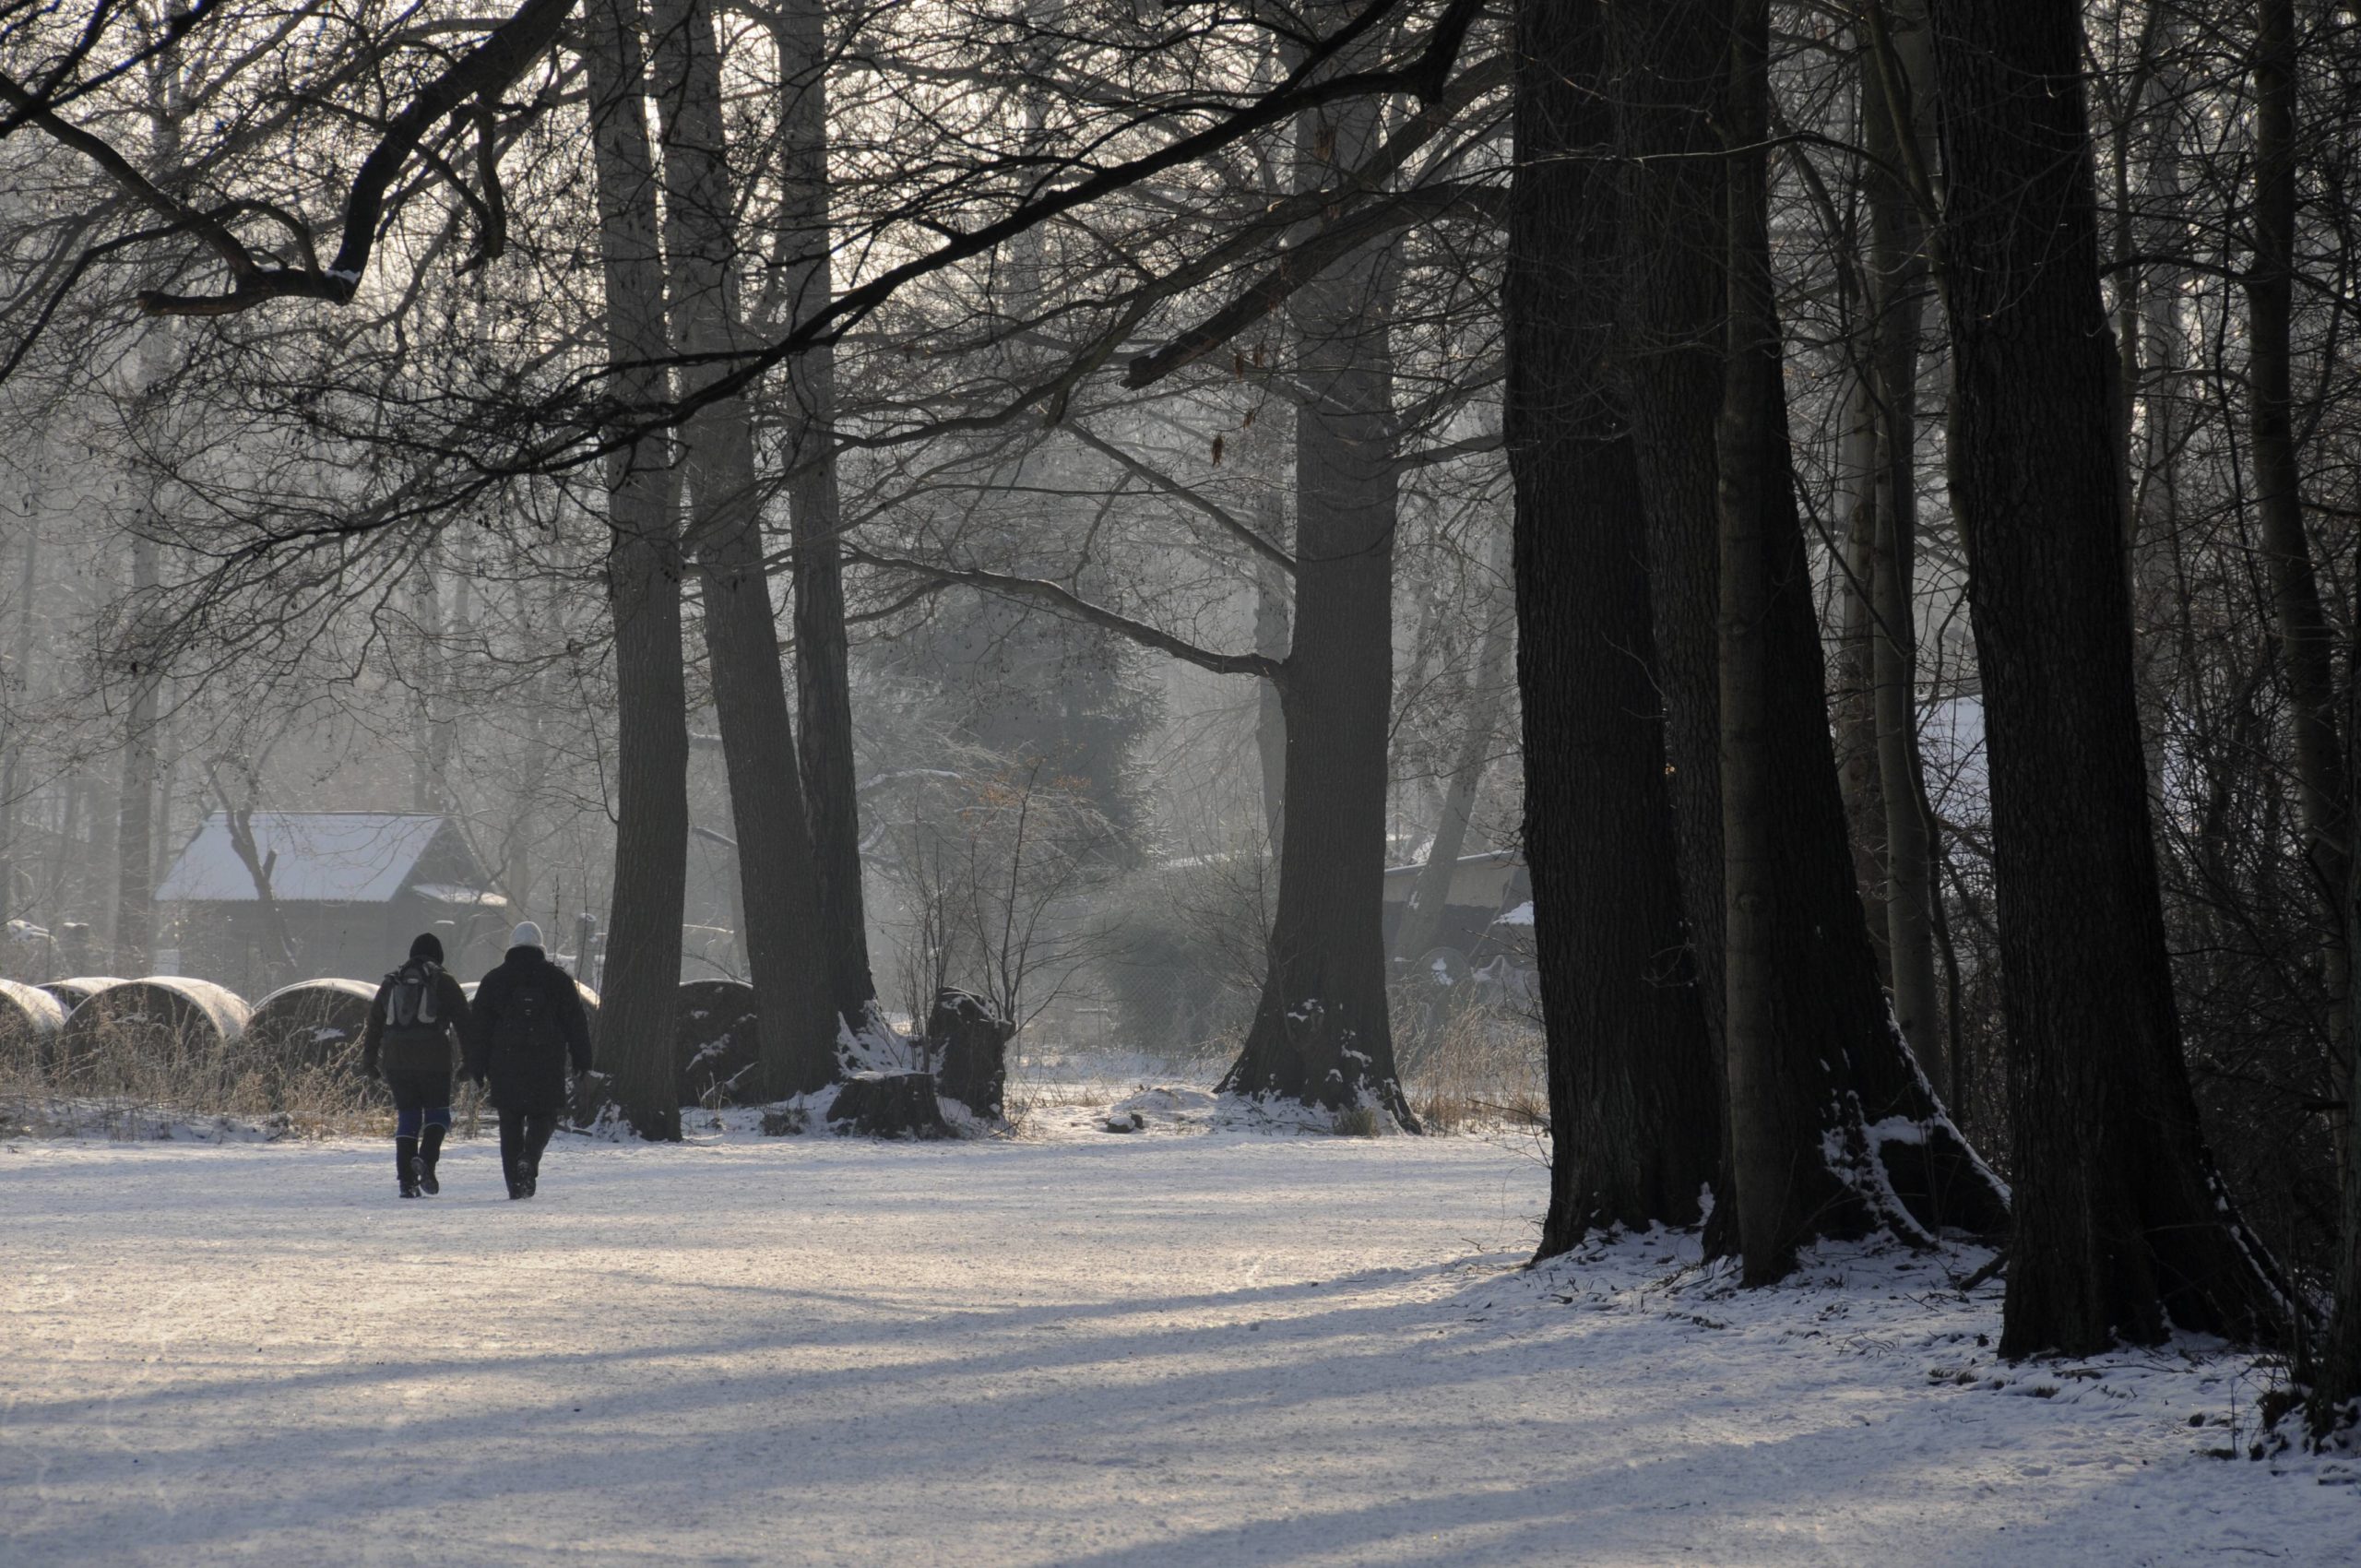 Wintersport Zwei Winterwanderer im Spreewald: Wer in der Kälte wandert, spürt die klare Luft des Waldes noch intensiver. 